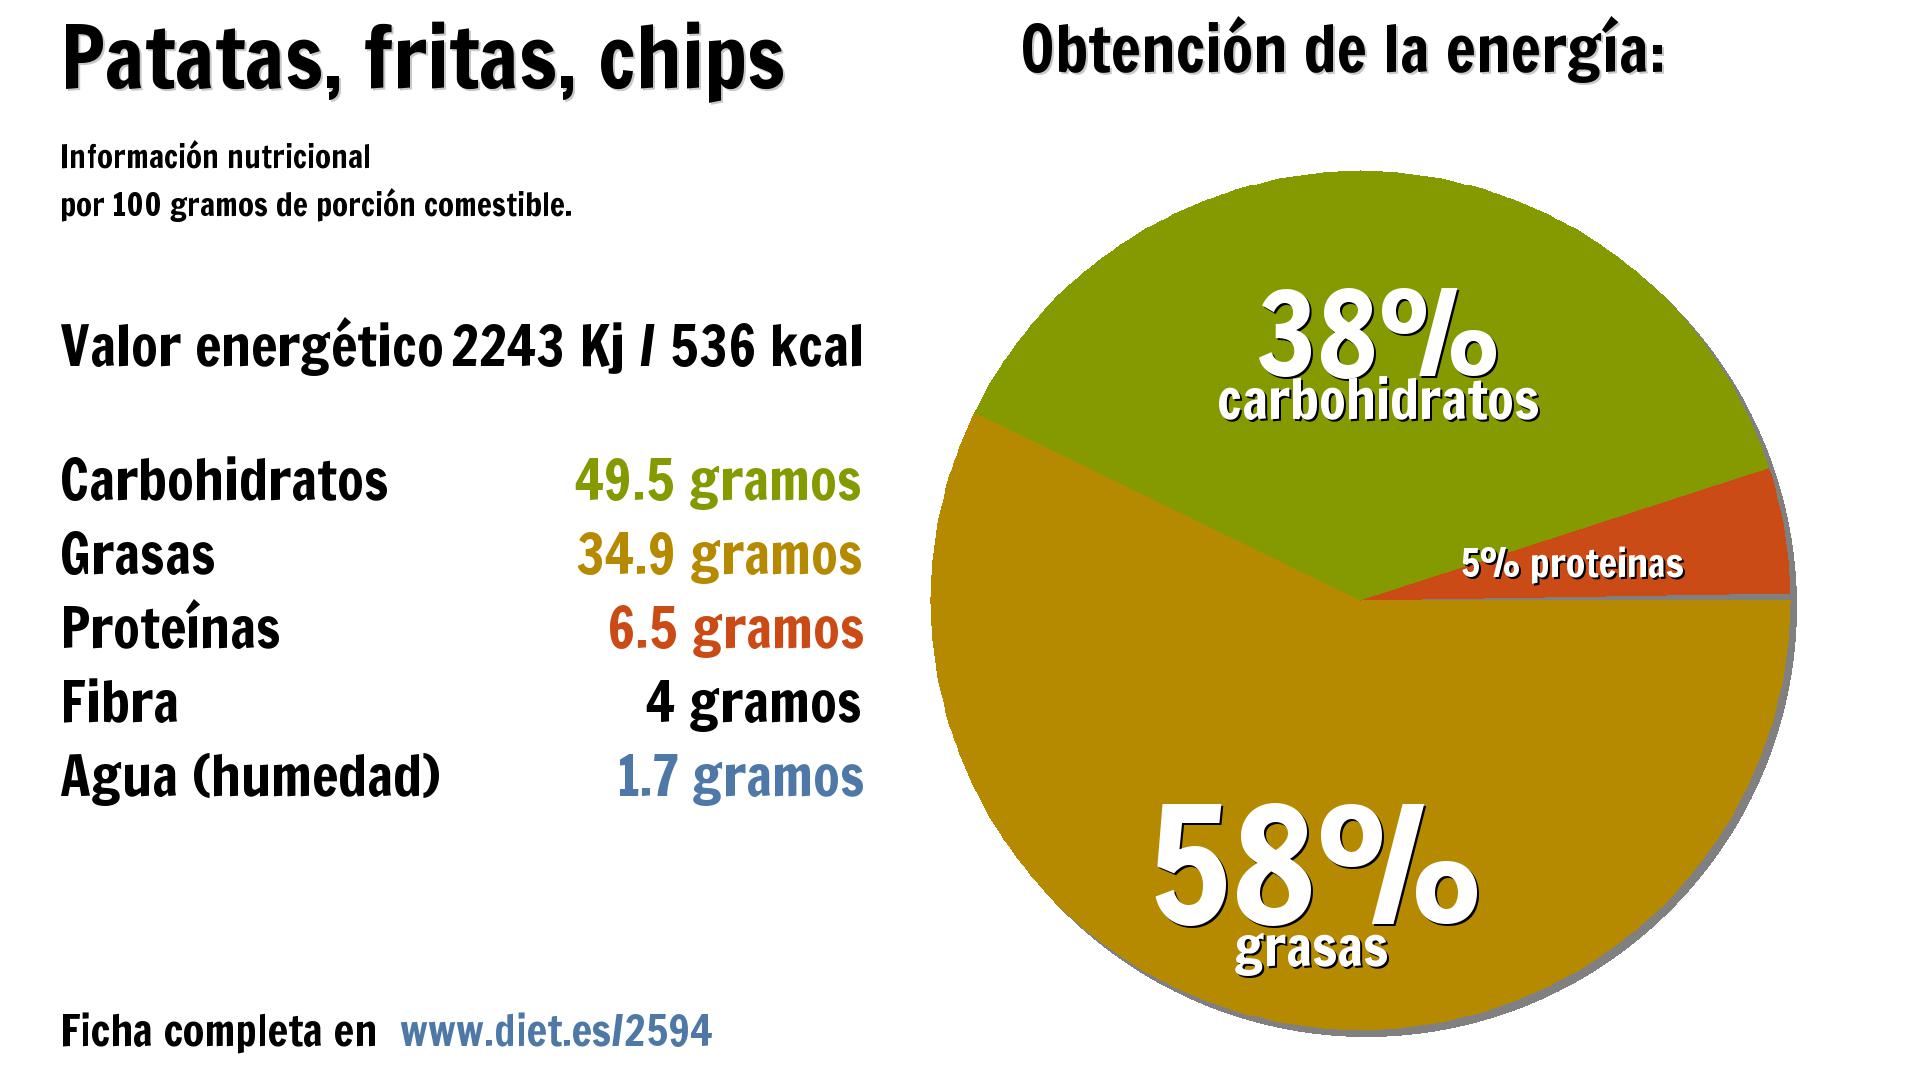 Patatas, fritas, chips: energía 2243 Kj, carbohidratos 50 g., grasas 35 g., proteínas 7 g., fibra 4 g. y agua 2 g.